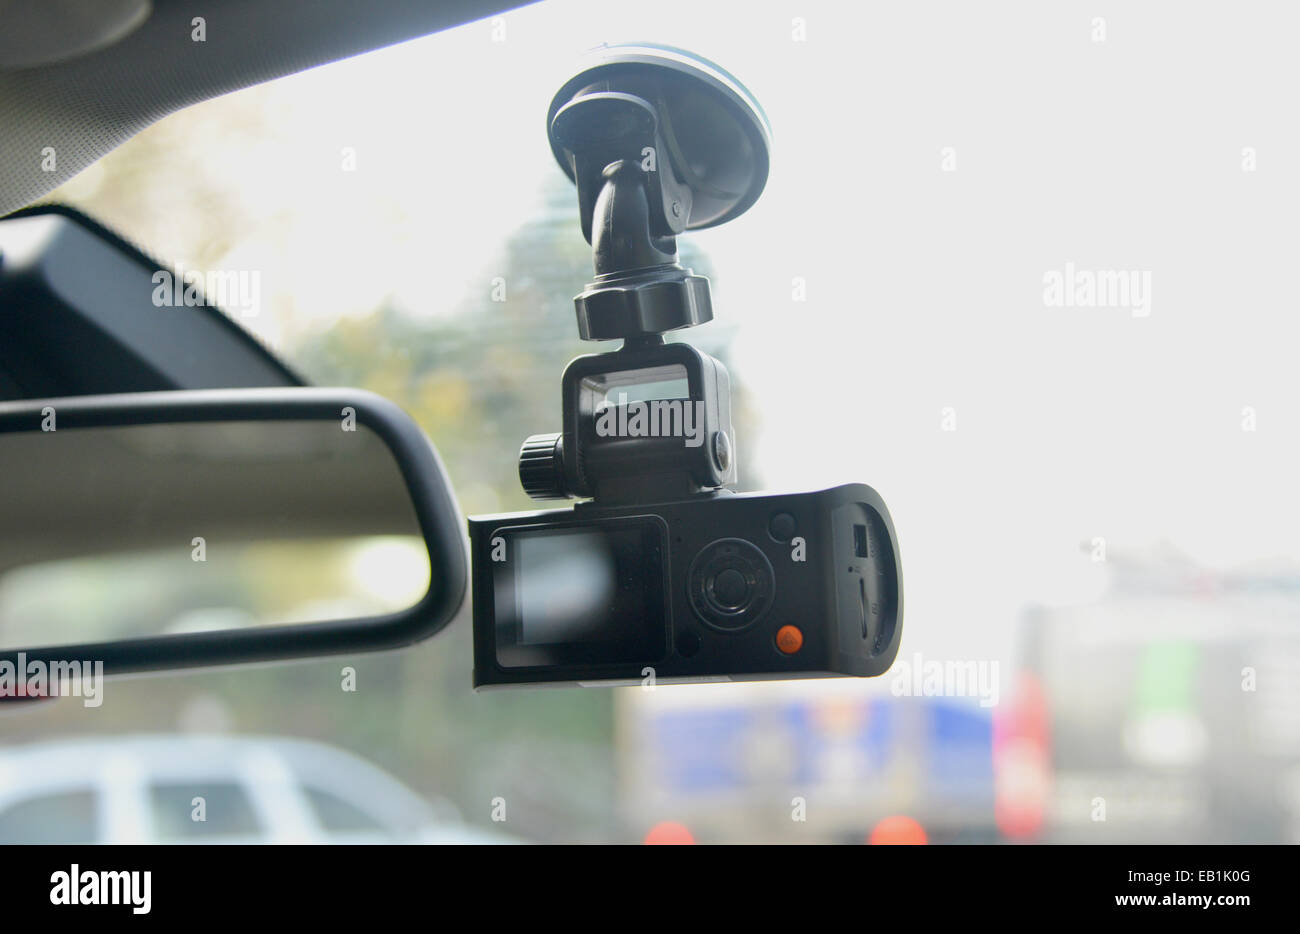 Dash-cam car windscreen video camera Stock Photo